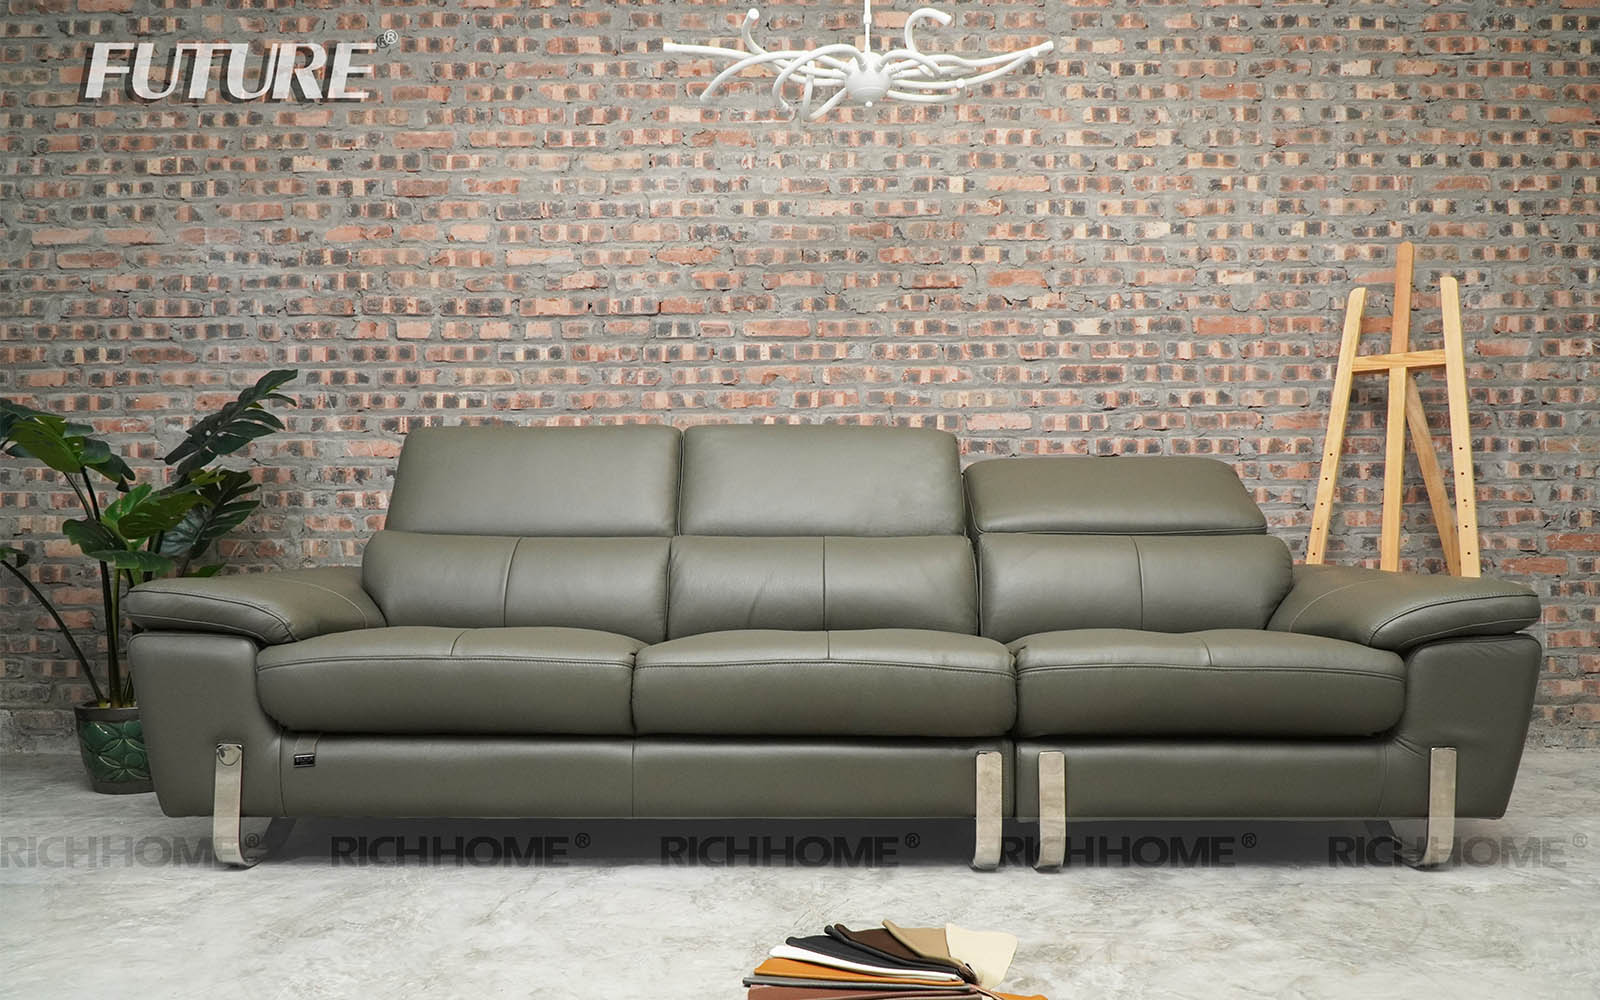 15 mẫu bàn ghế sofa phòng khách nhập khẩu đáng mua nhất - Ảnh 11